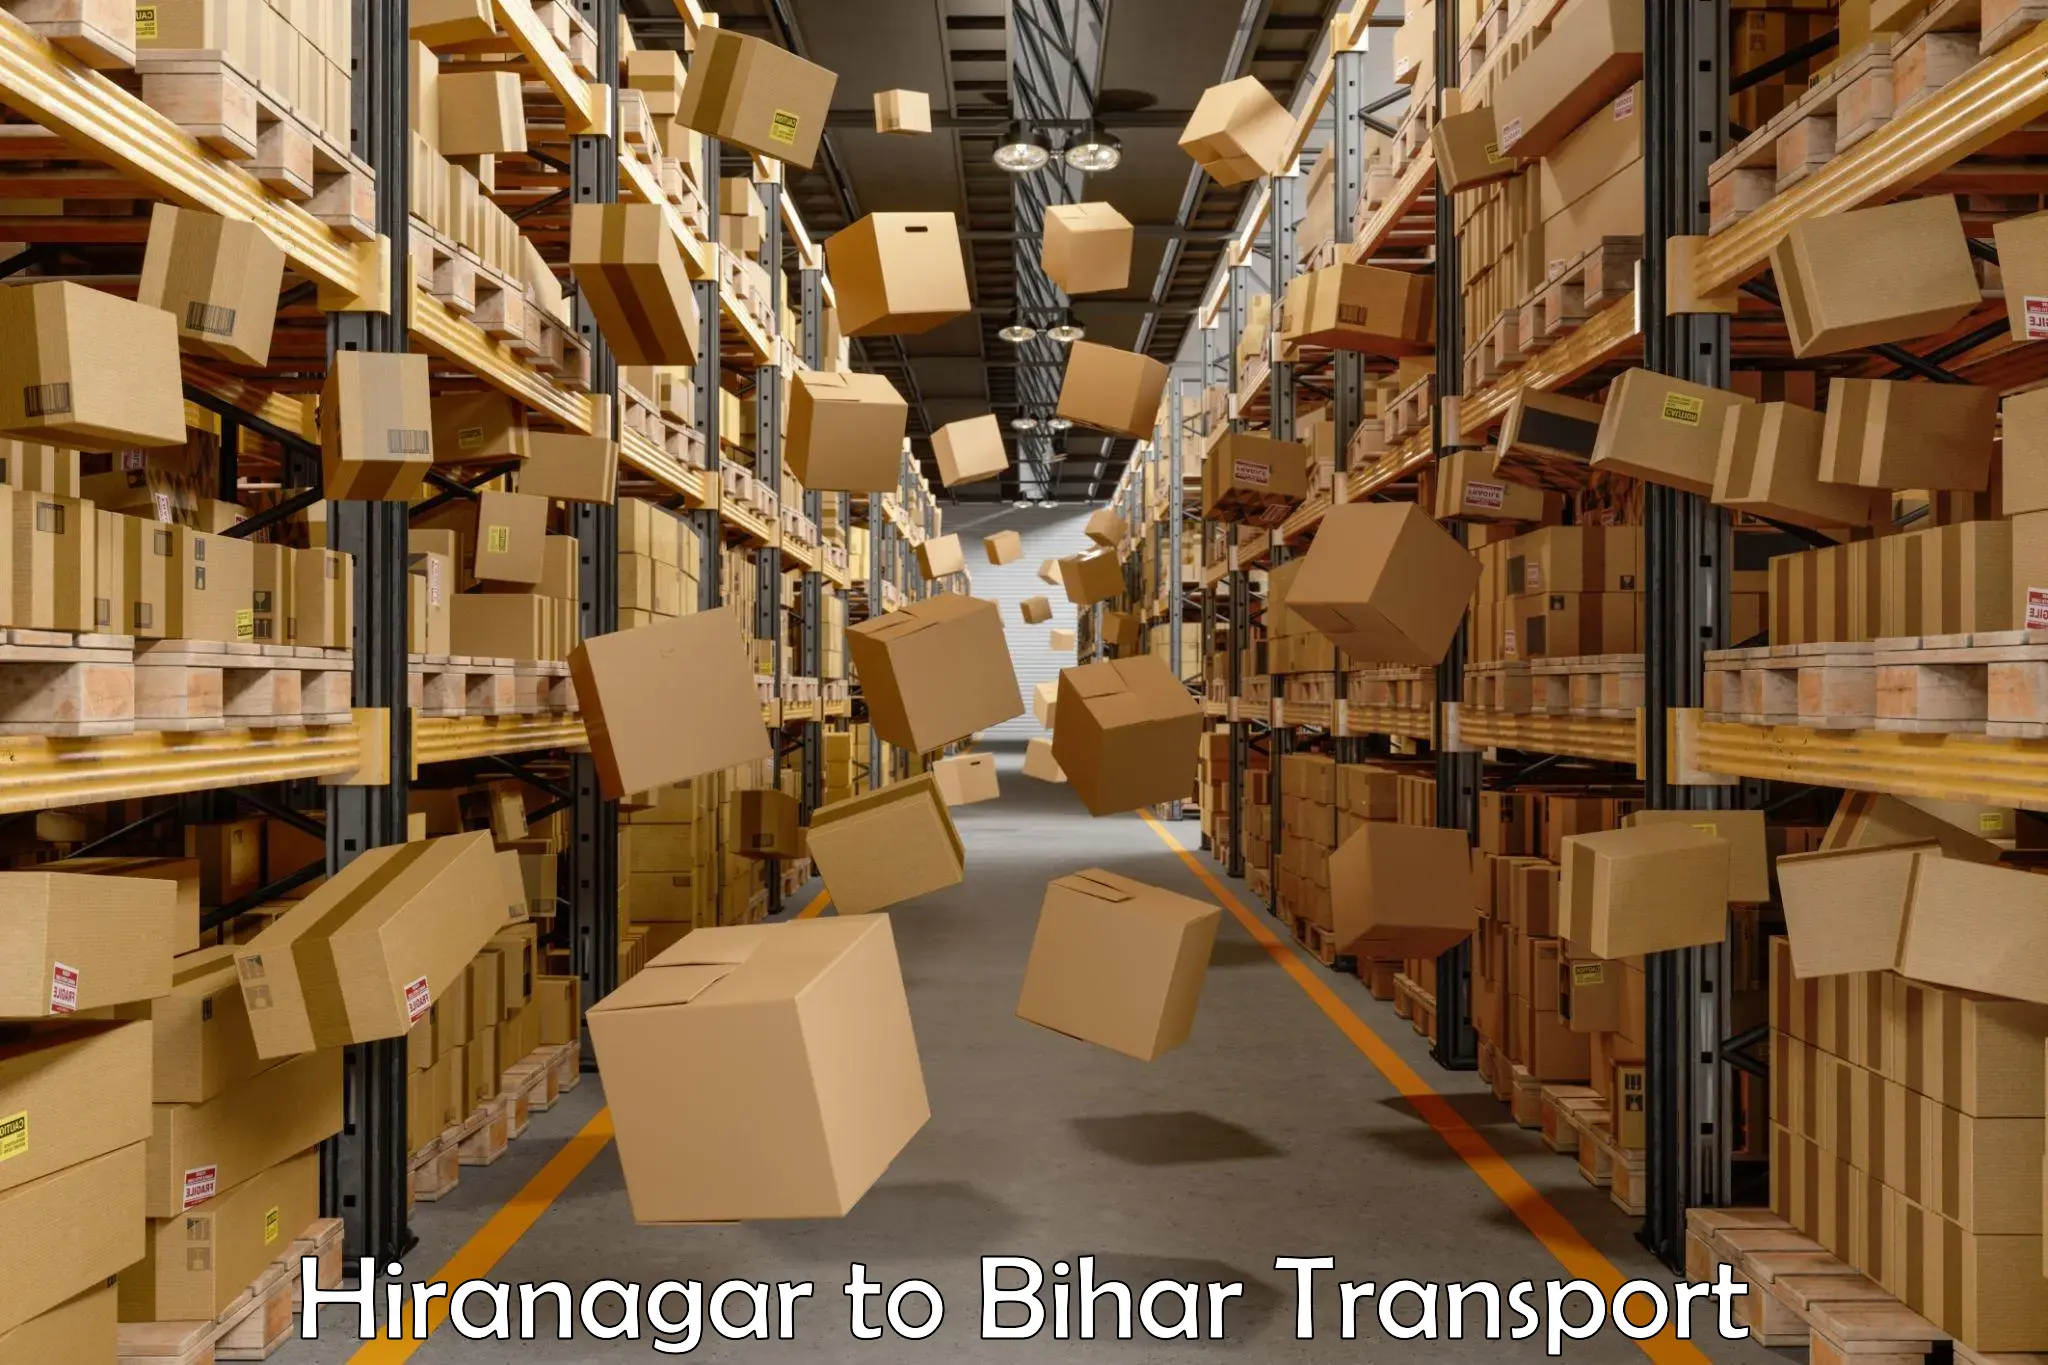 International cargo transportation services Hiranagar to Khodaganj